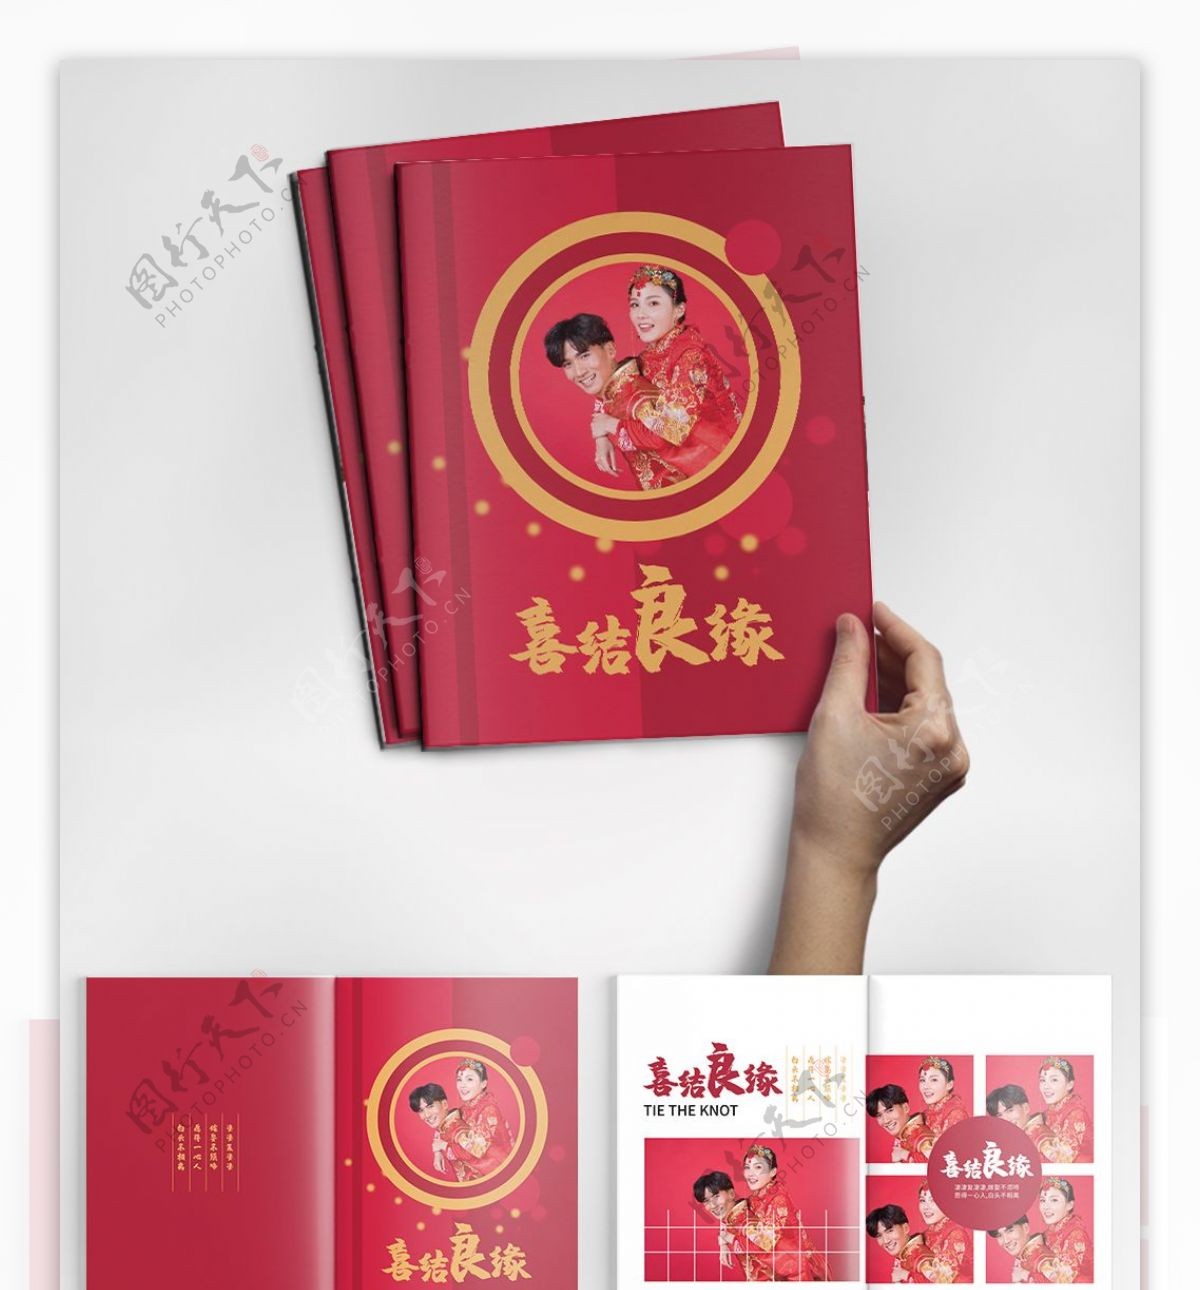 中式传统婚庆整套宣传画册